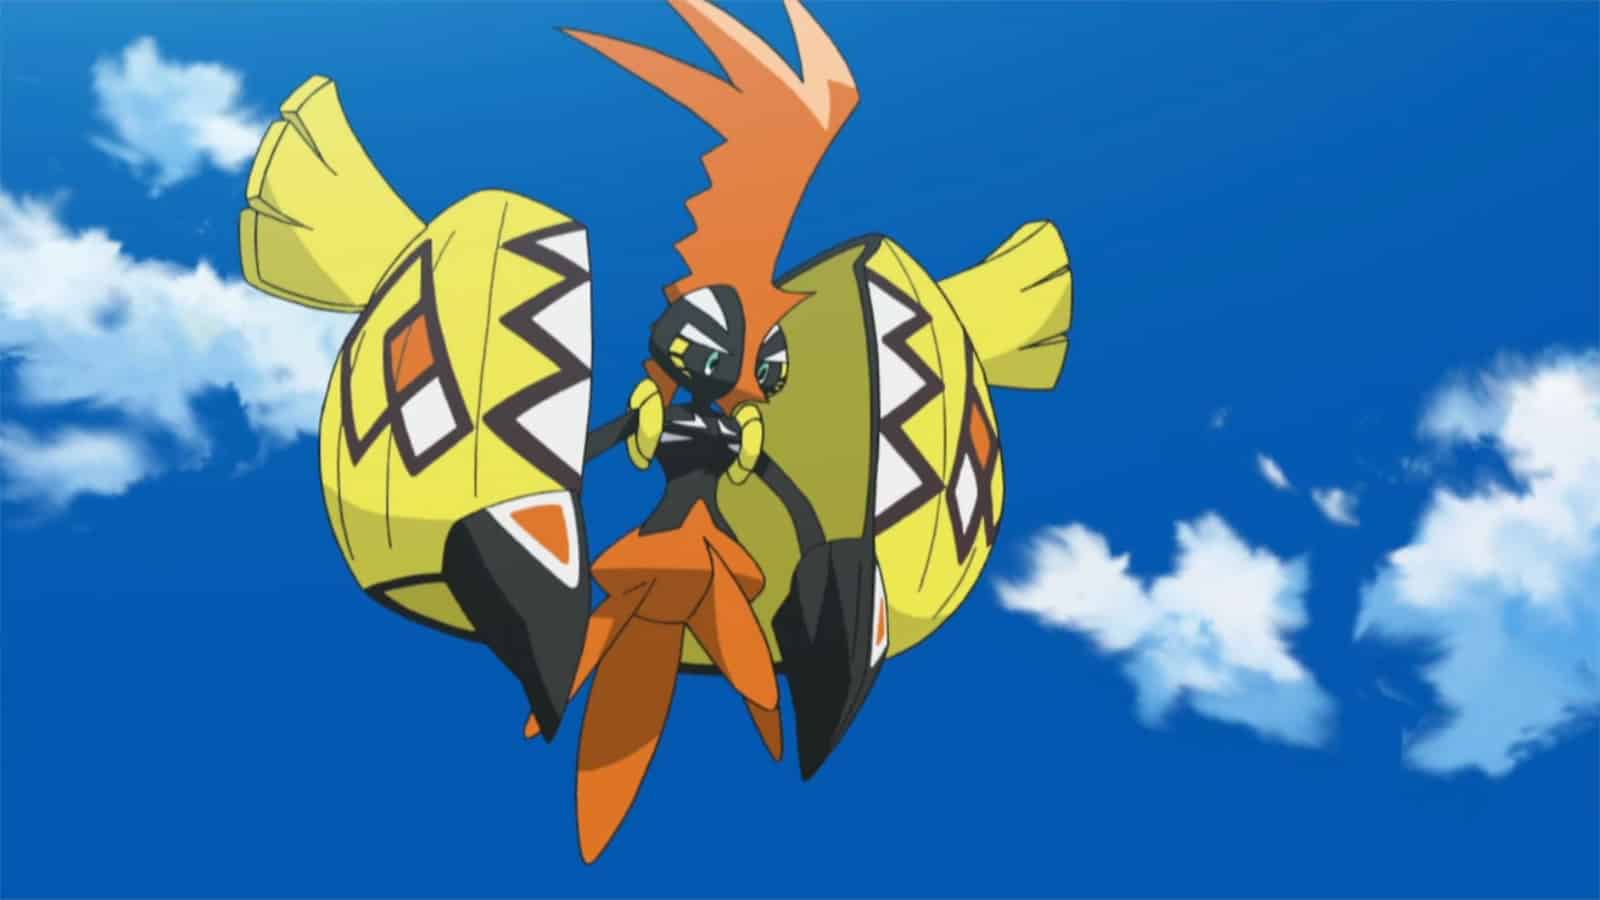 Tapu Koko appearing in the Pokemon anime